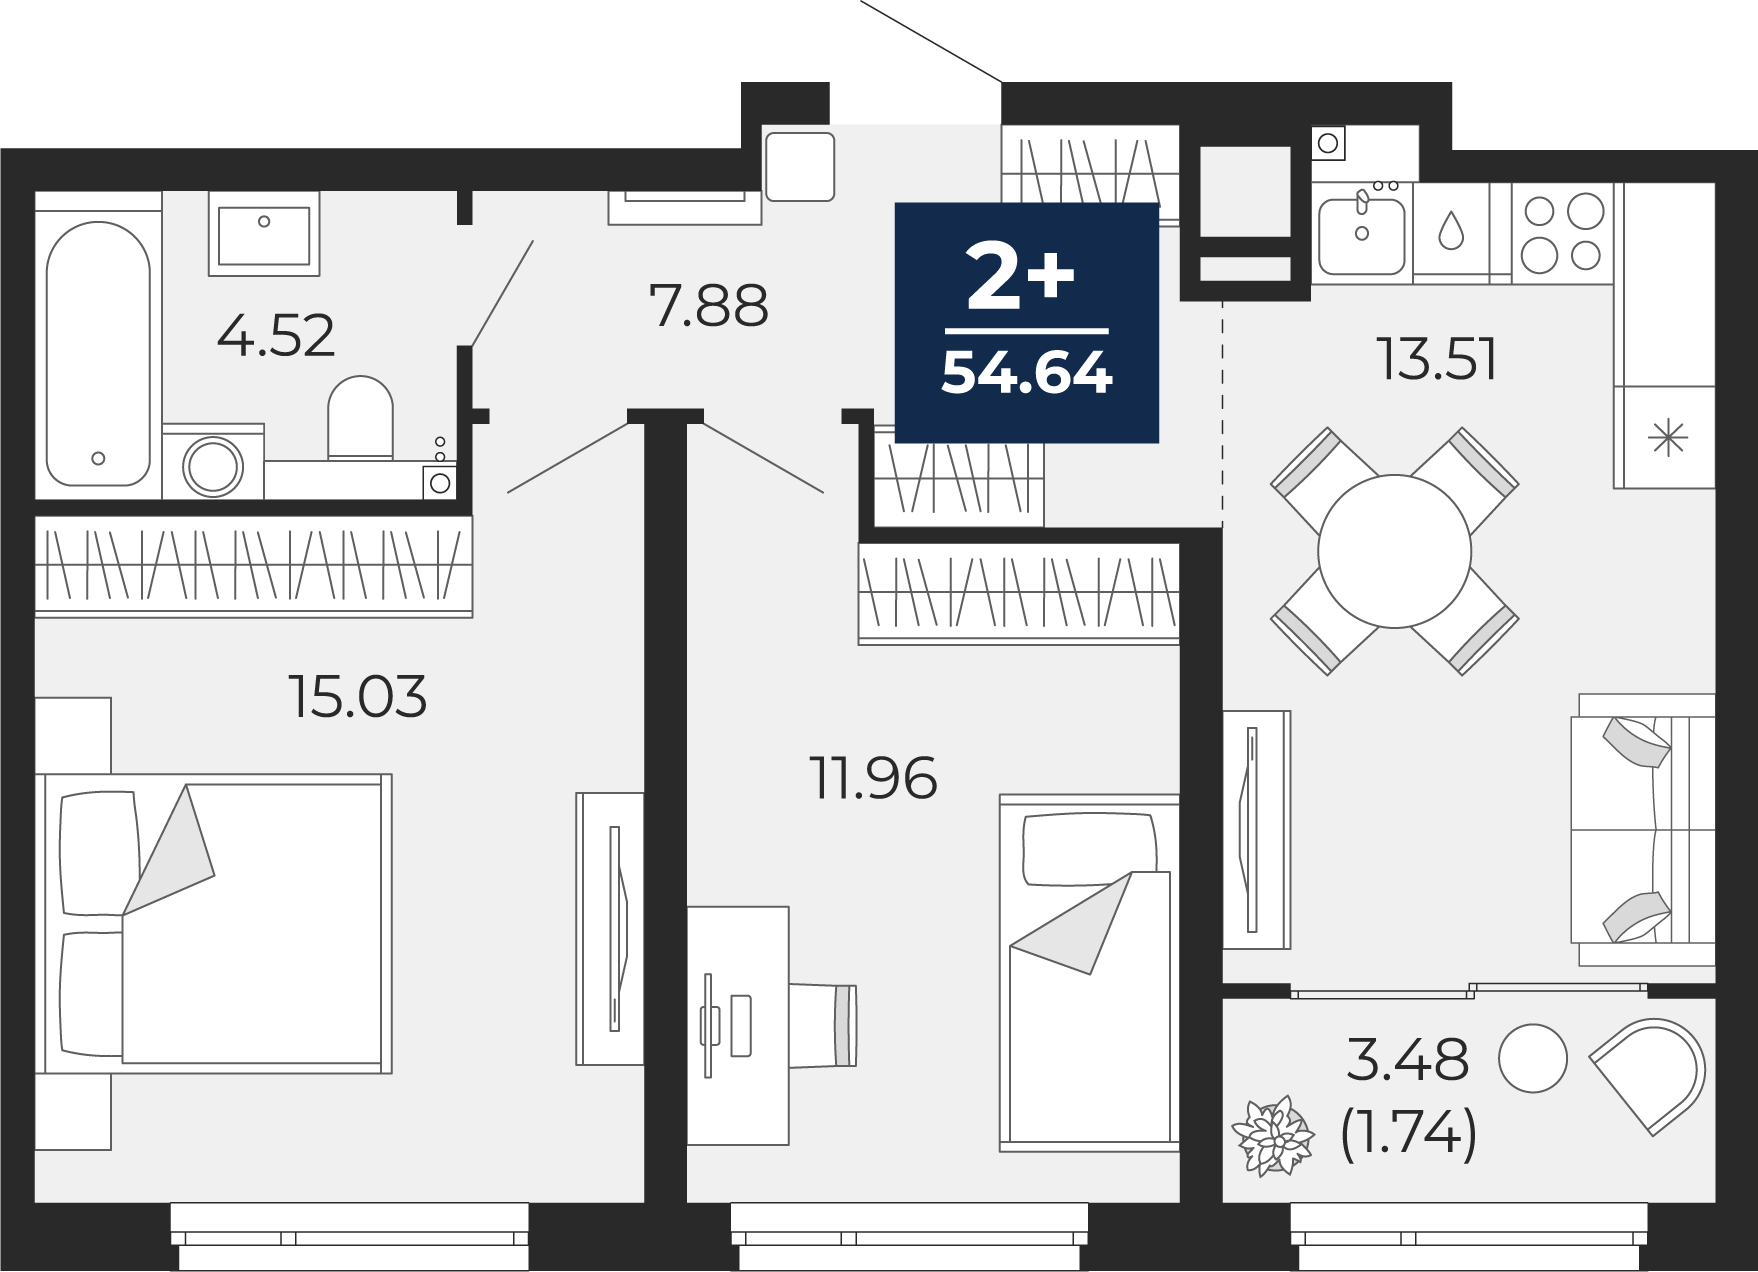 Квартира № 187, 2-комнатная, 54.64 кв. м, 8 этаж